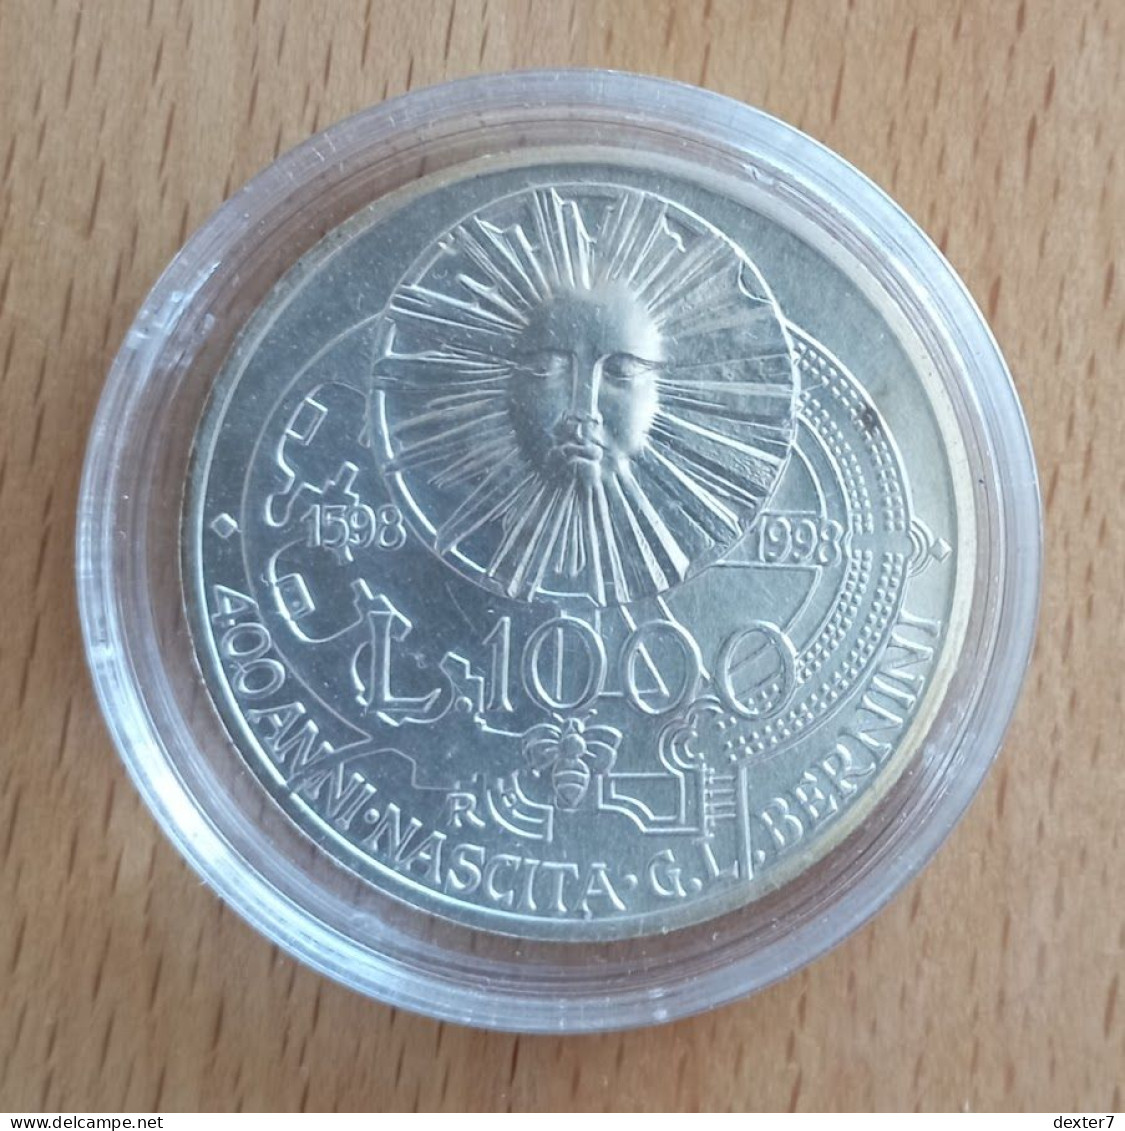 1998 Bernini 1.000 Lire UNC 1000 - 0,39 Oz Of Pure Silver - 500 Lire